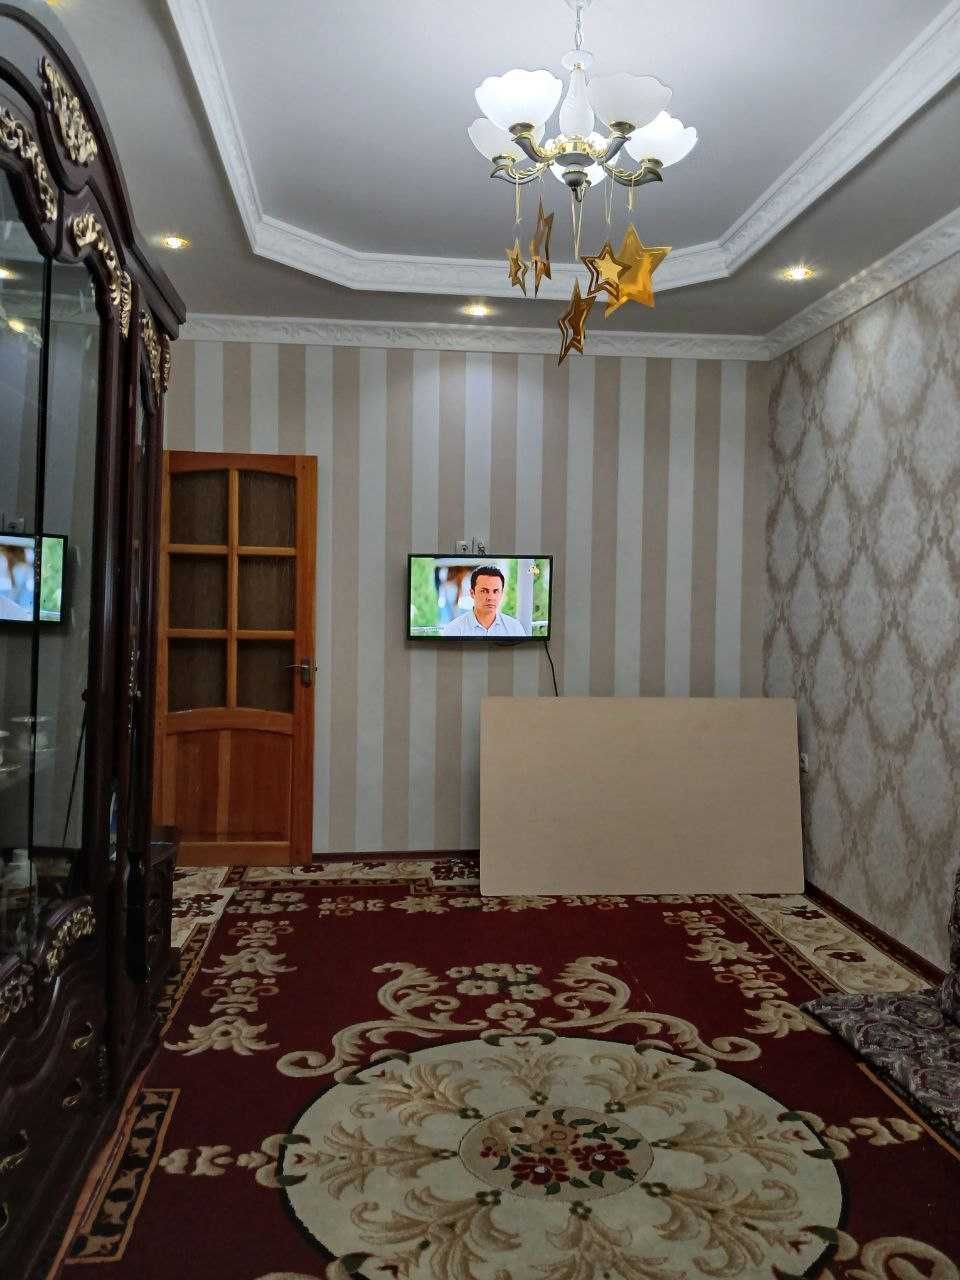 Продаётся 2-х комнатная квартира в массиве Ибн-Сино 2 г. Ташкент